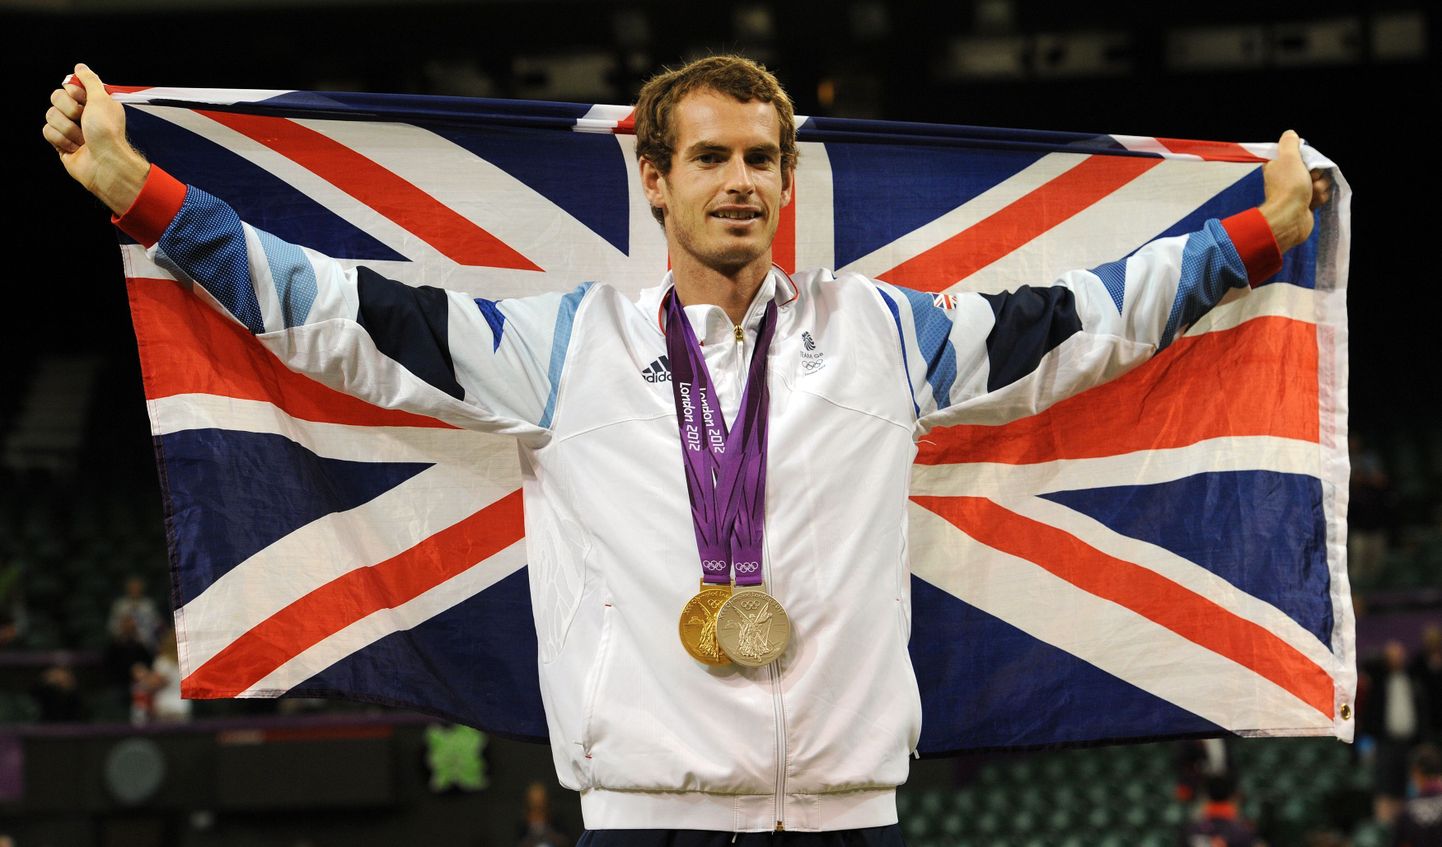 Šotlane Andy Murray tõi brittidele 2012. aasta Londoni mängudelt kuld- ja hõbemedali ning ärgitas rahvuslikku eneseteadvust. Sama võtet loodavad britid kasutada ka tulevikus.